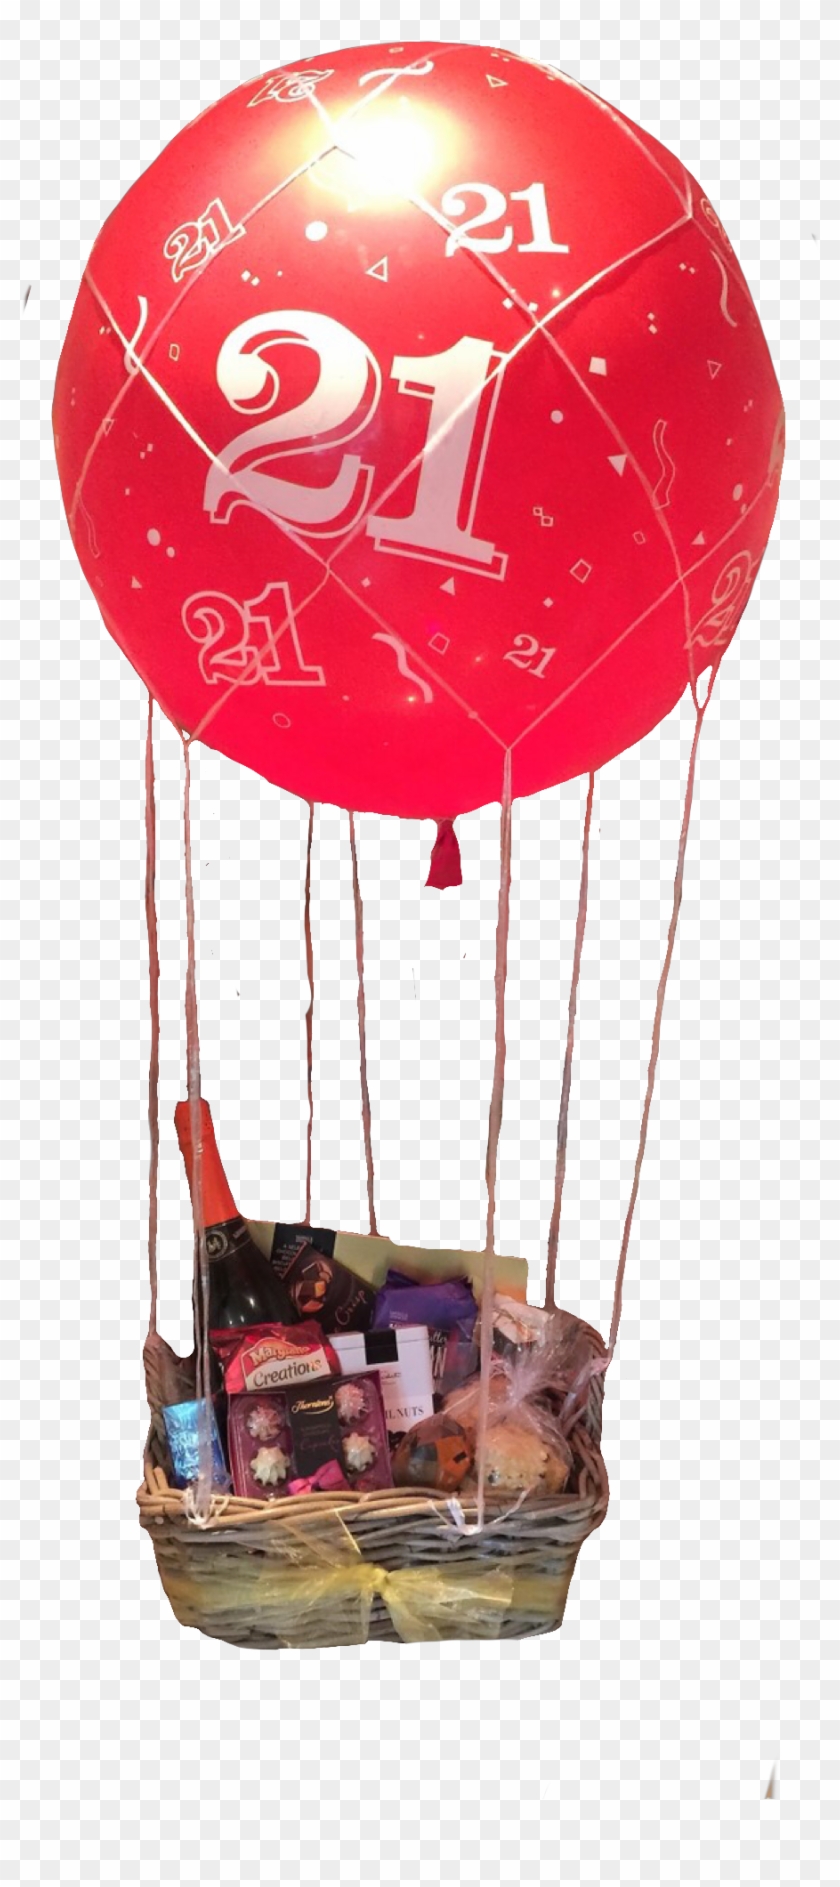 Cart - Subtotal - Checkout - 21st Birthday Hot Air - Hot Air Balloon Clipart #1803376